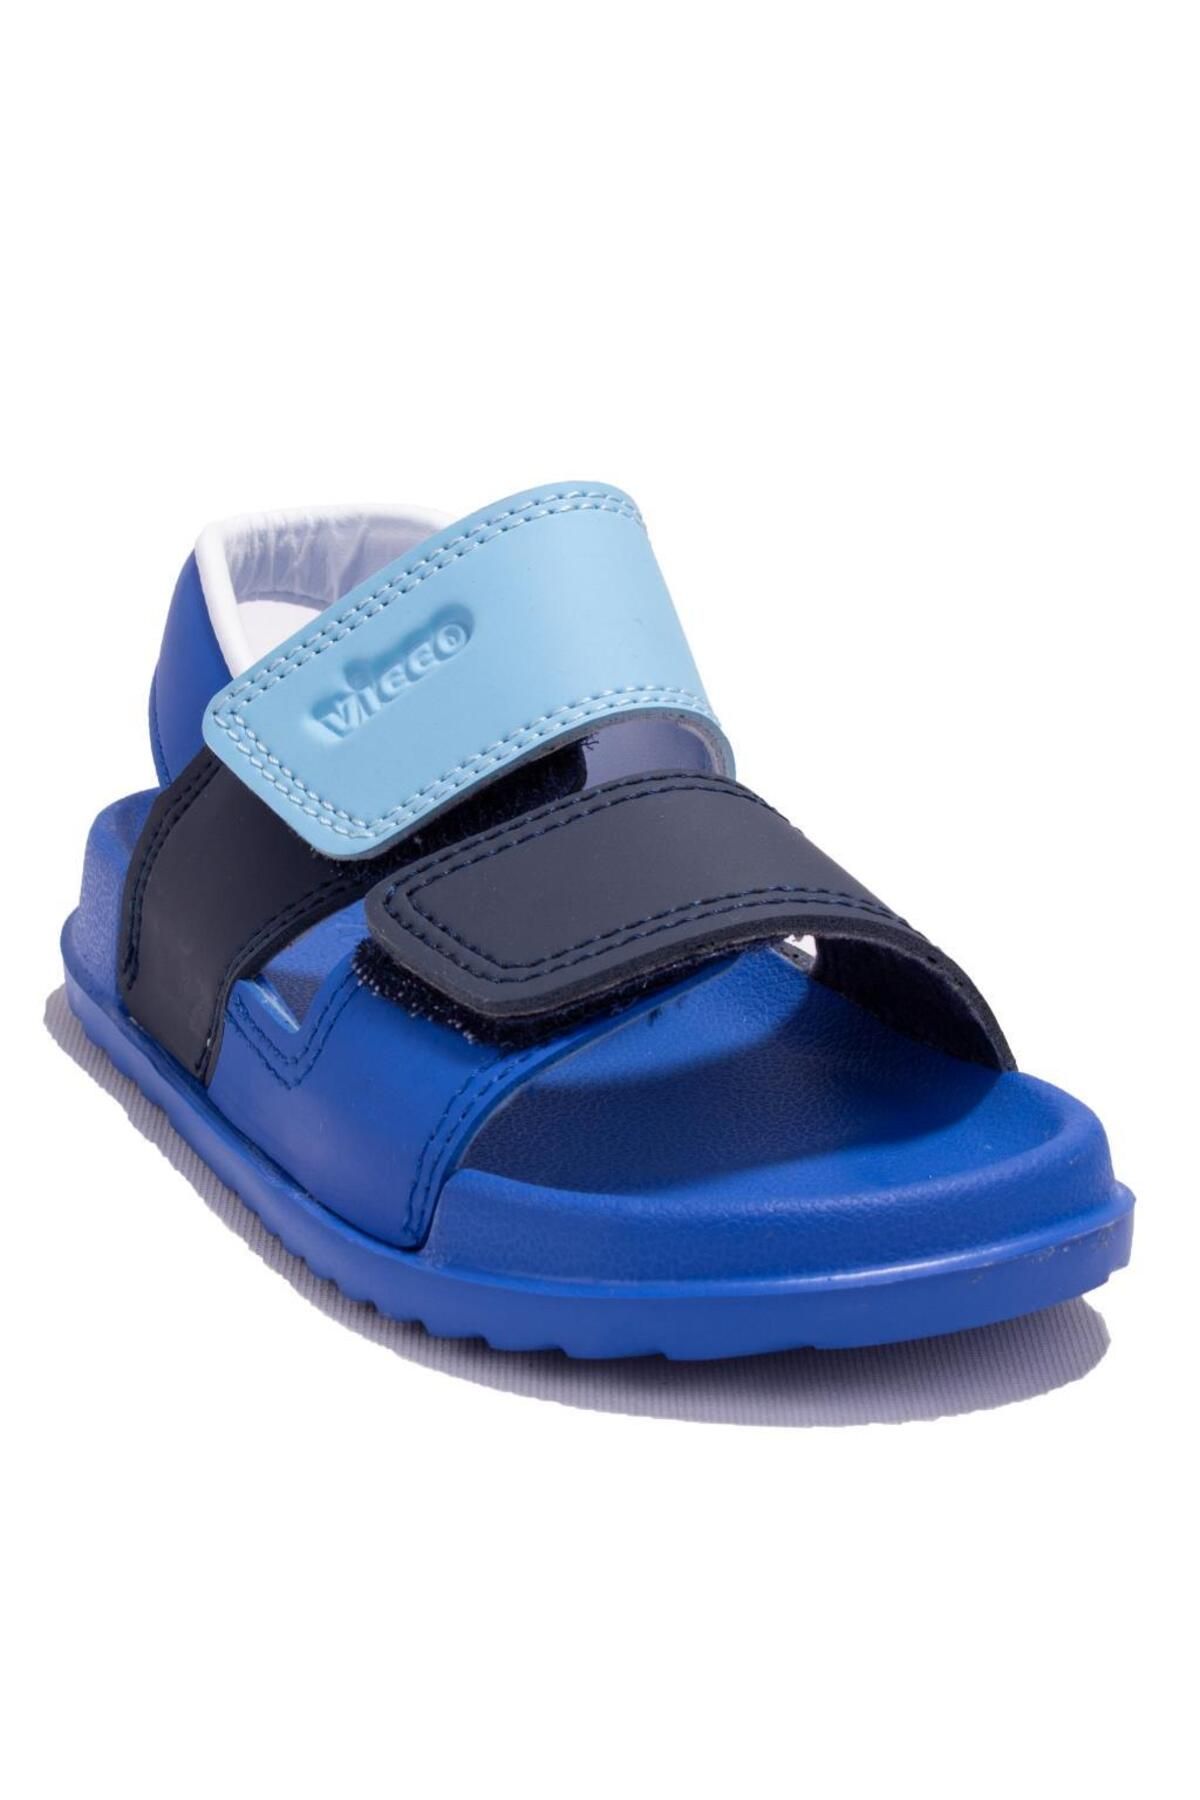 Vicco Krixi 321f23y252 Mavi Ortopedik Günlük Erkek Çocuk Spor Sandalet